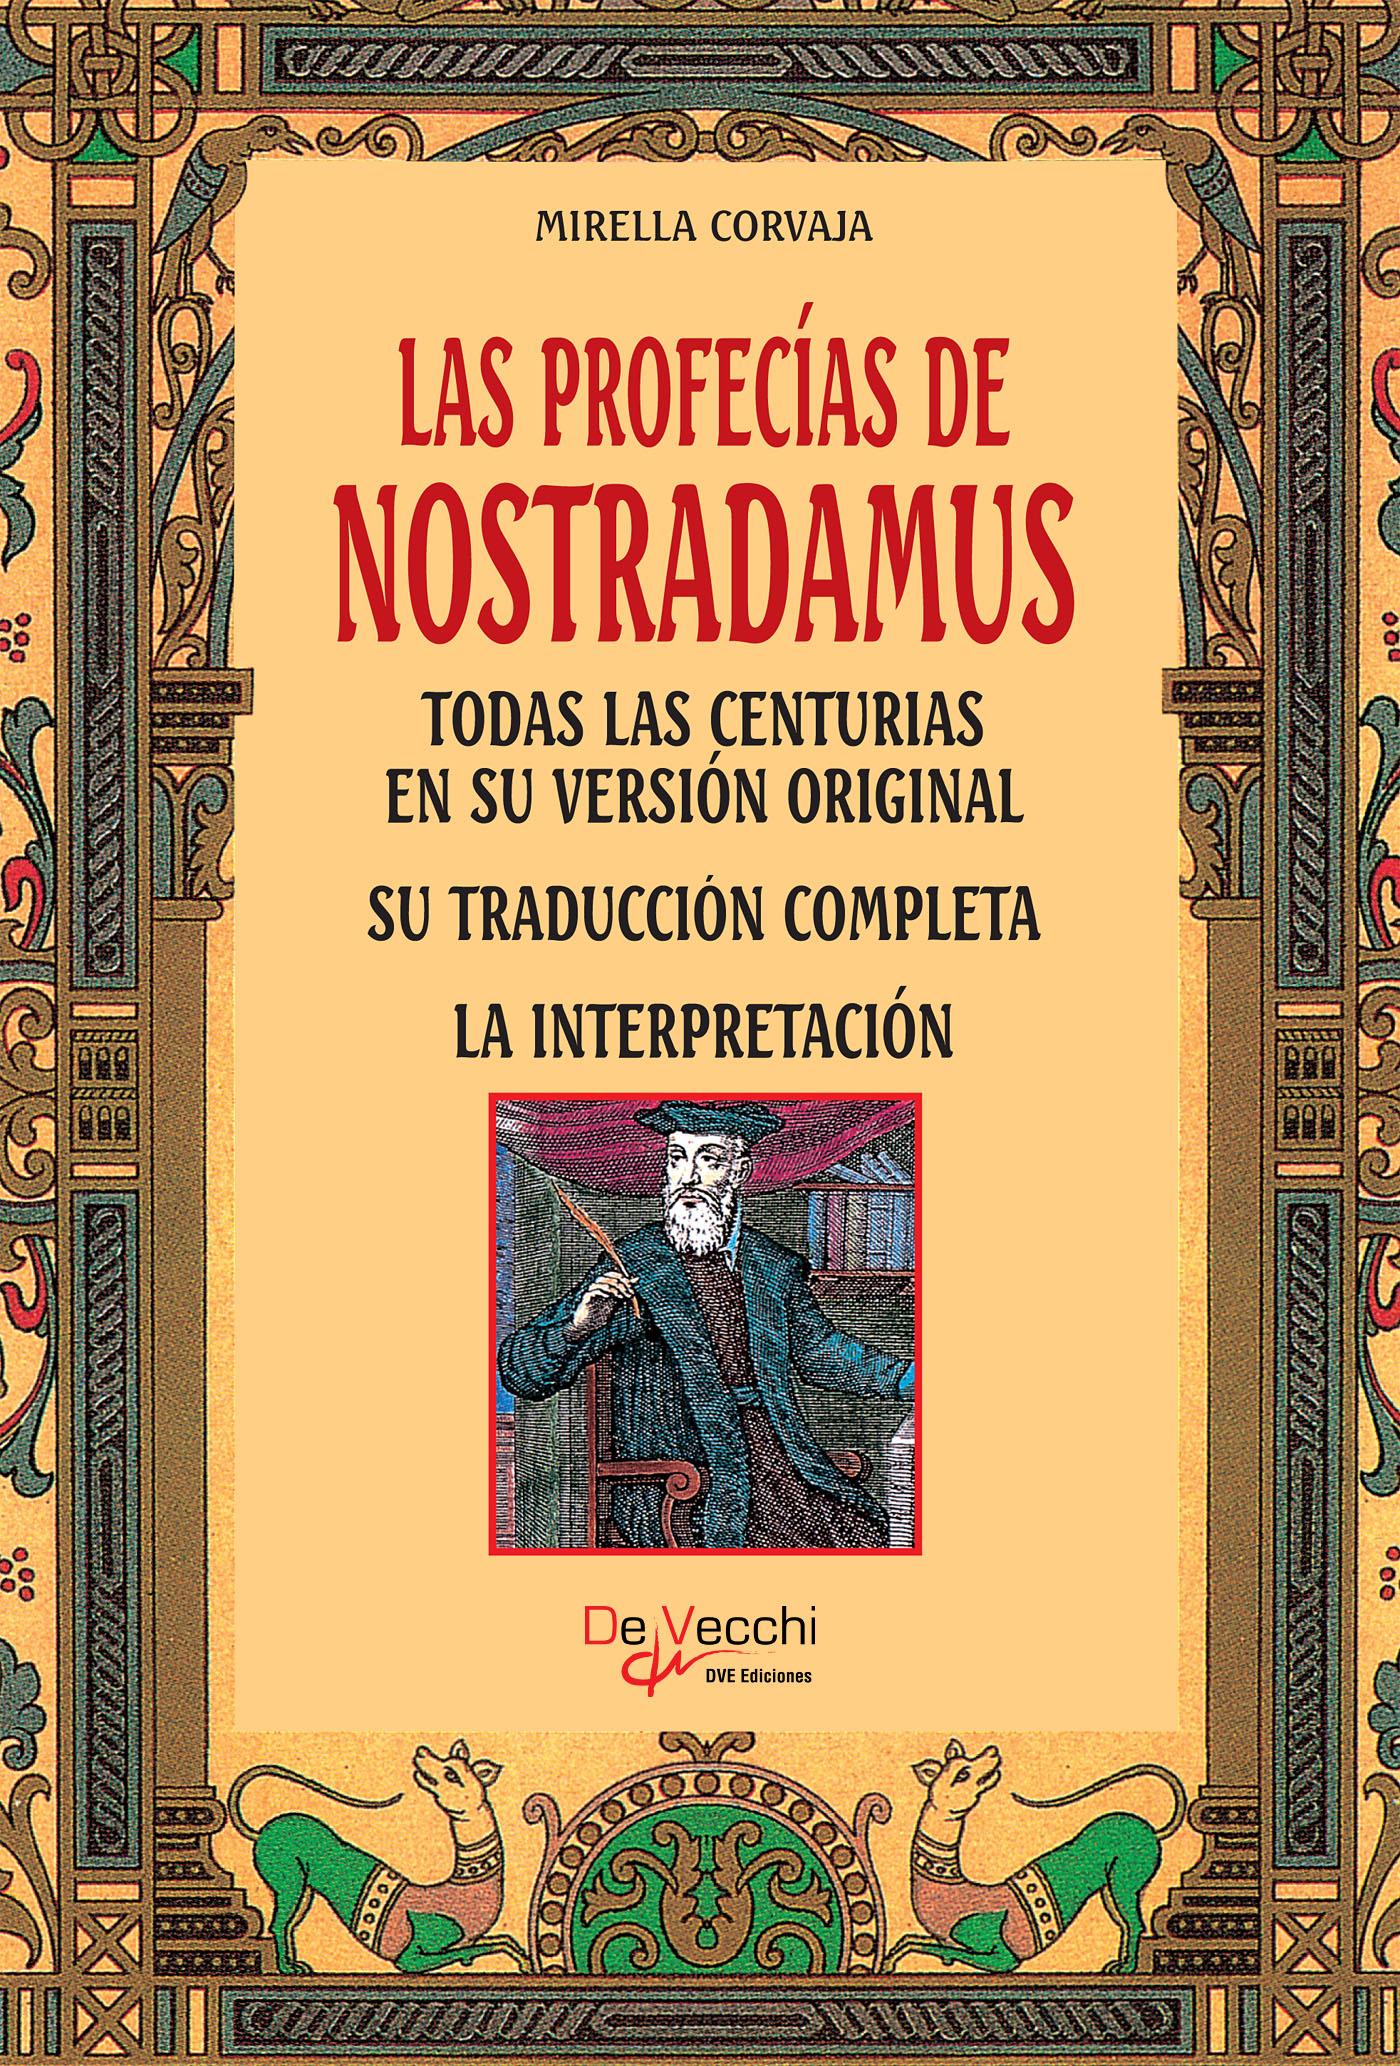 Las profecías de Nostradamus :: Libelista